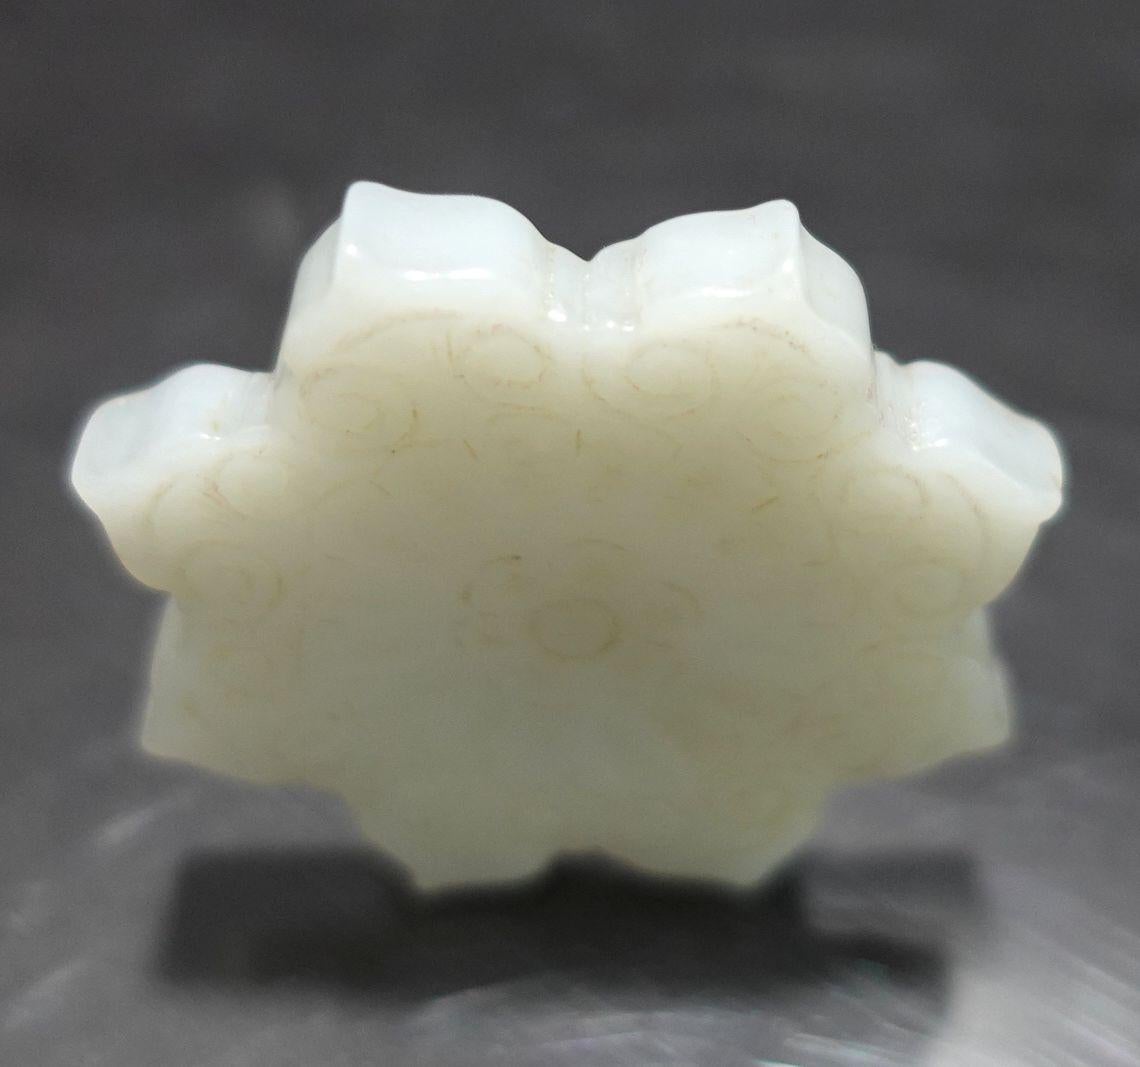 Un beau pendentif chinois en jade blanc sculpté à la main en huit angles de feuilles de lotus. Le pendentif présente deux motifs sculptés différents sur deux surfaces. Résultat très délicat et unique, datant du 19ème siècle.
La couleur se présente